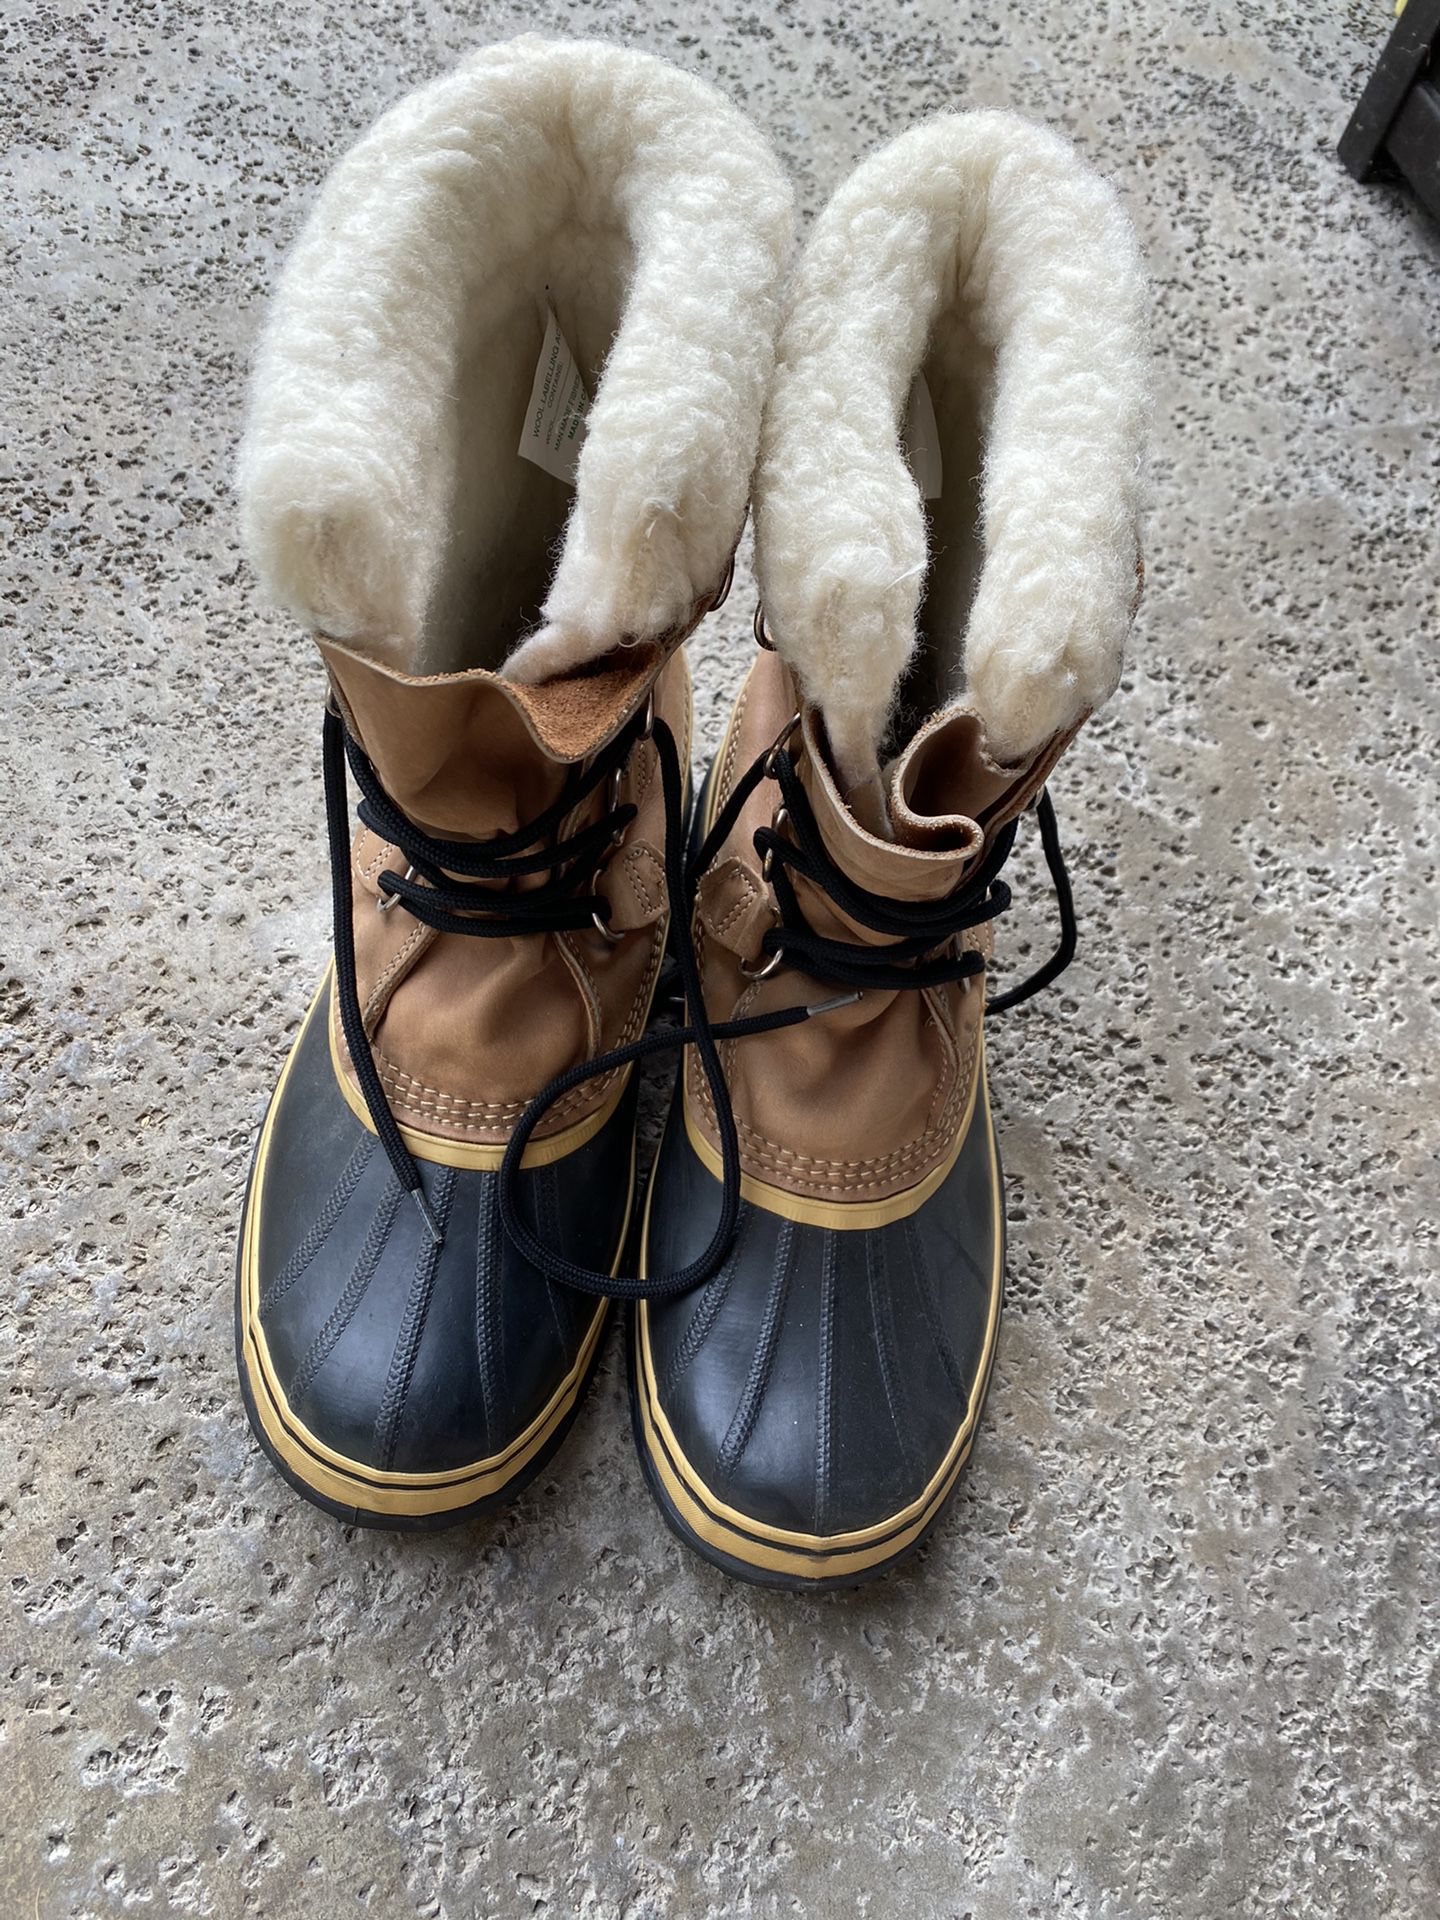 Men’s Sorel Afterski Boots